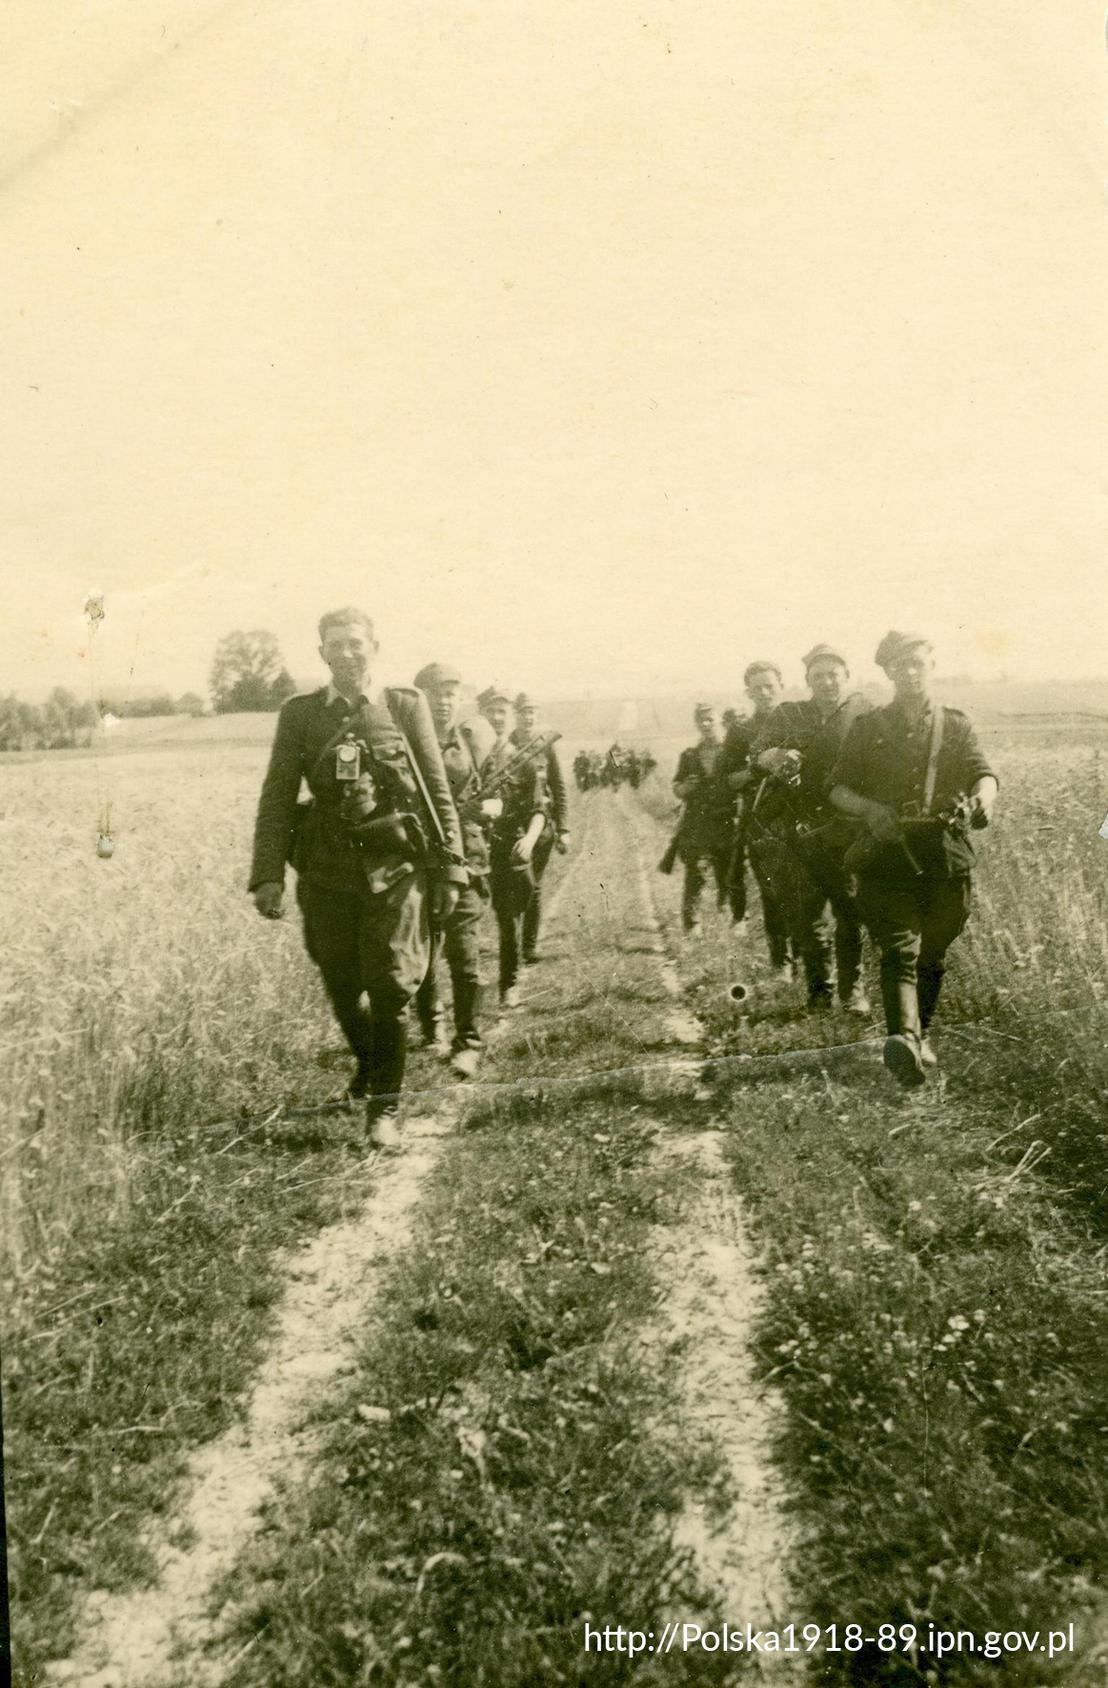 Lipiec 1945 r, żołnierze 5. Brygady Wileńskiej podczas marszu.